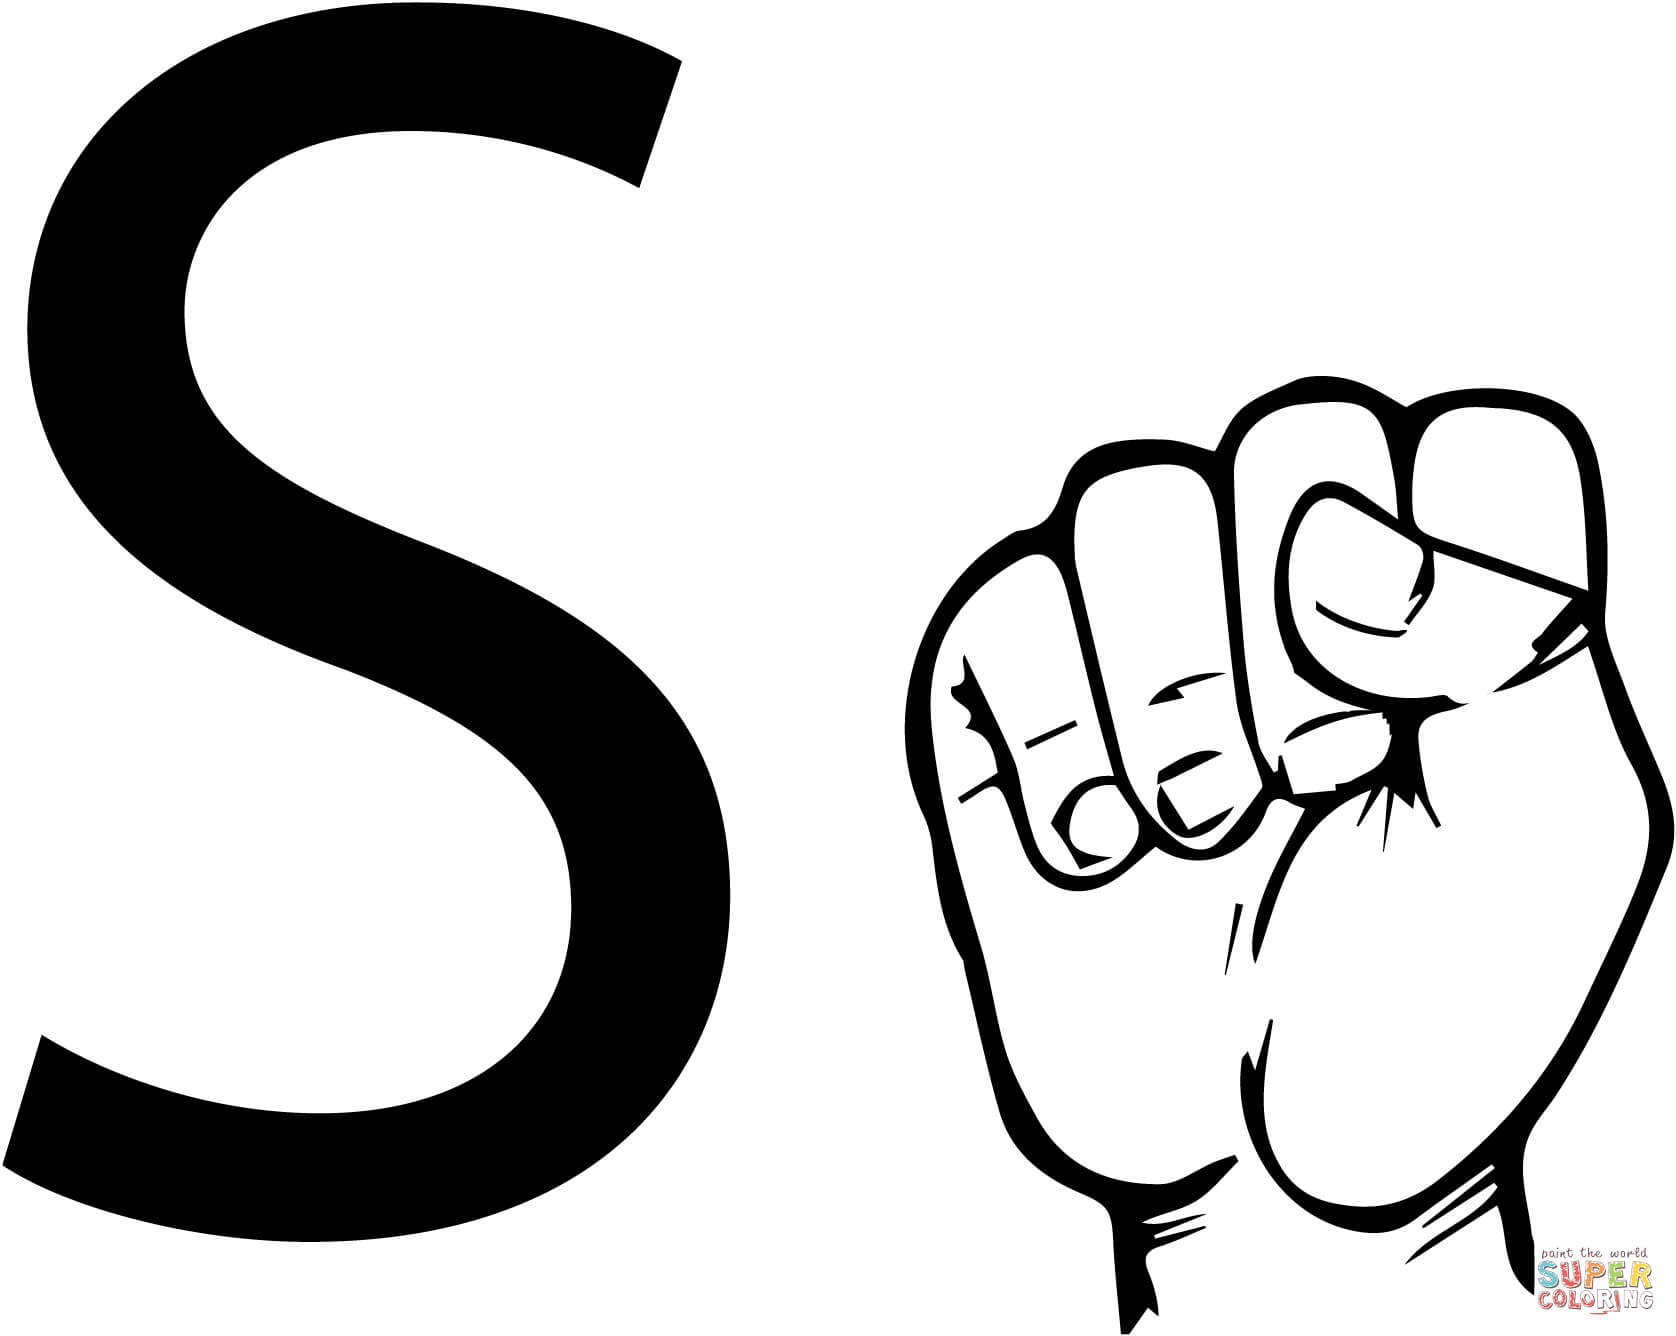 ASL Gebarentaal Letter S vanaf Letter S